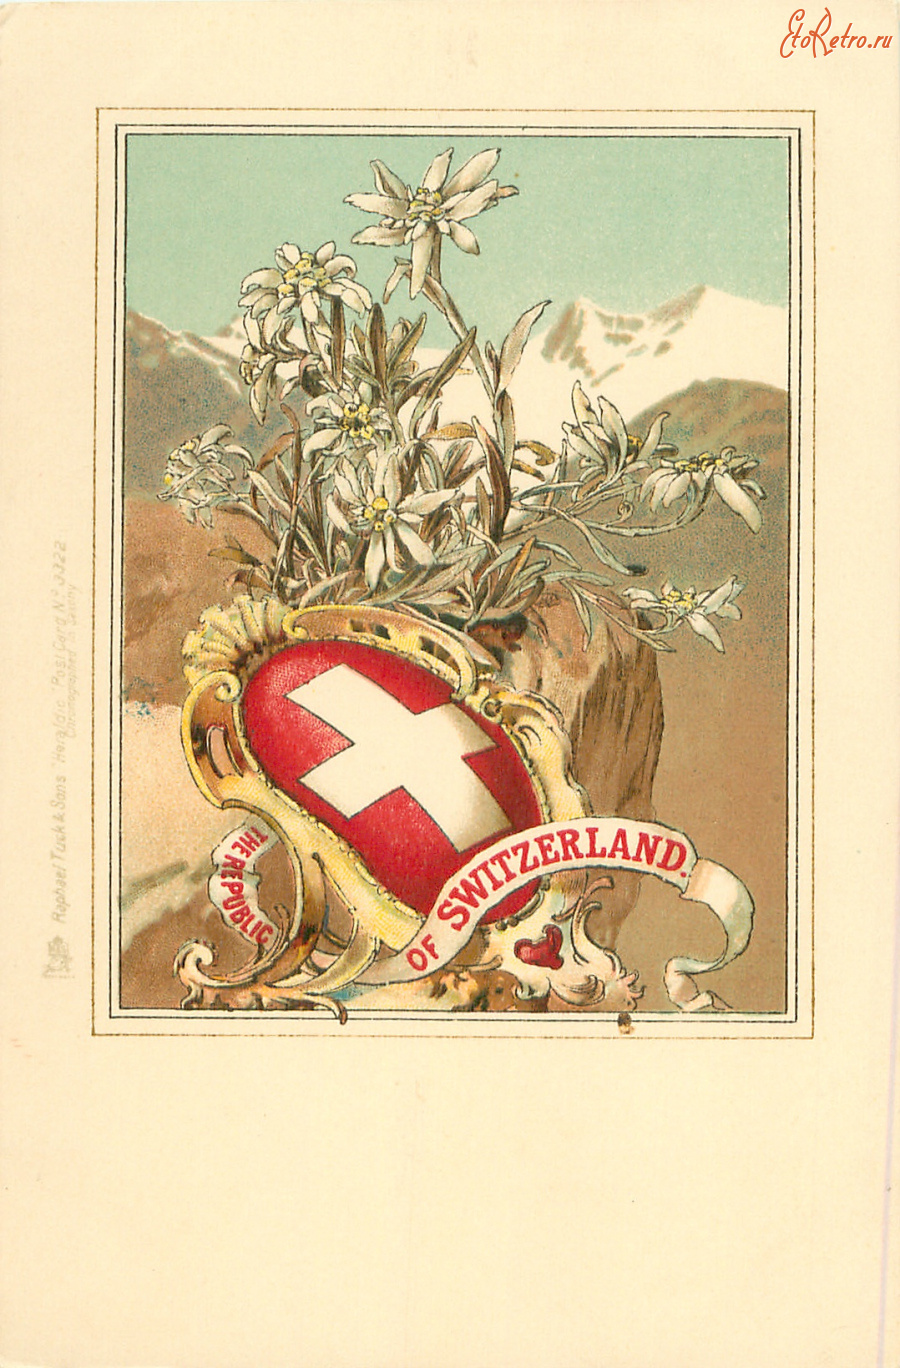 Швейцария - Швейцарская Республика